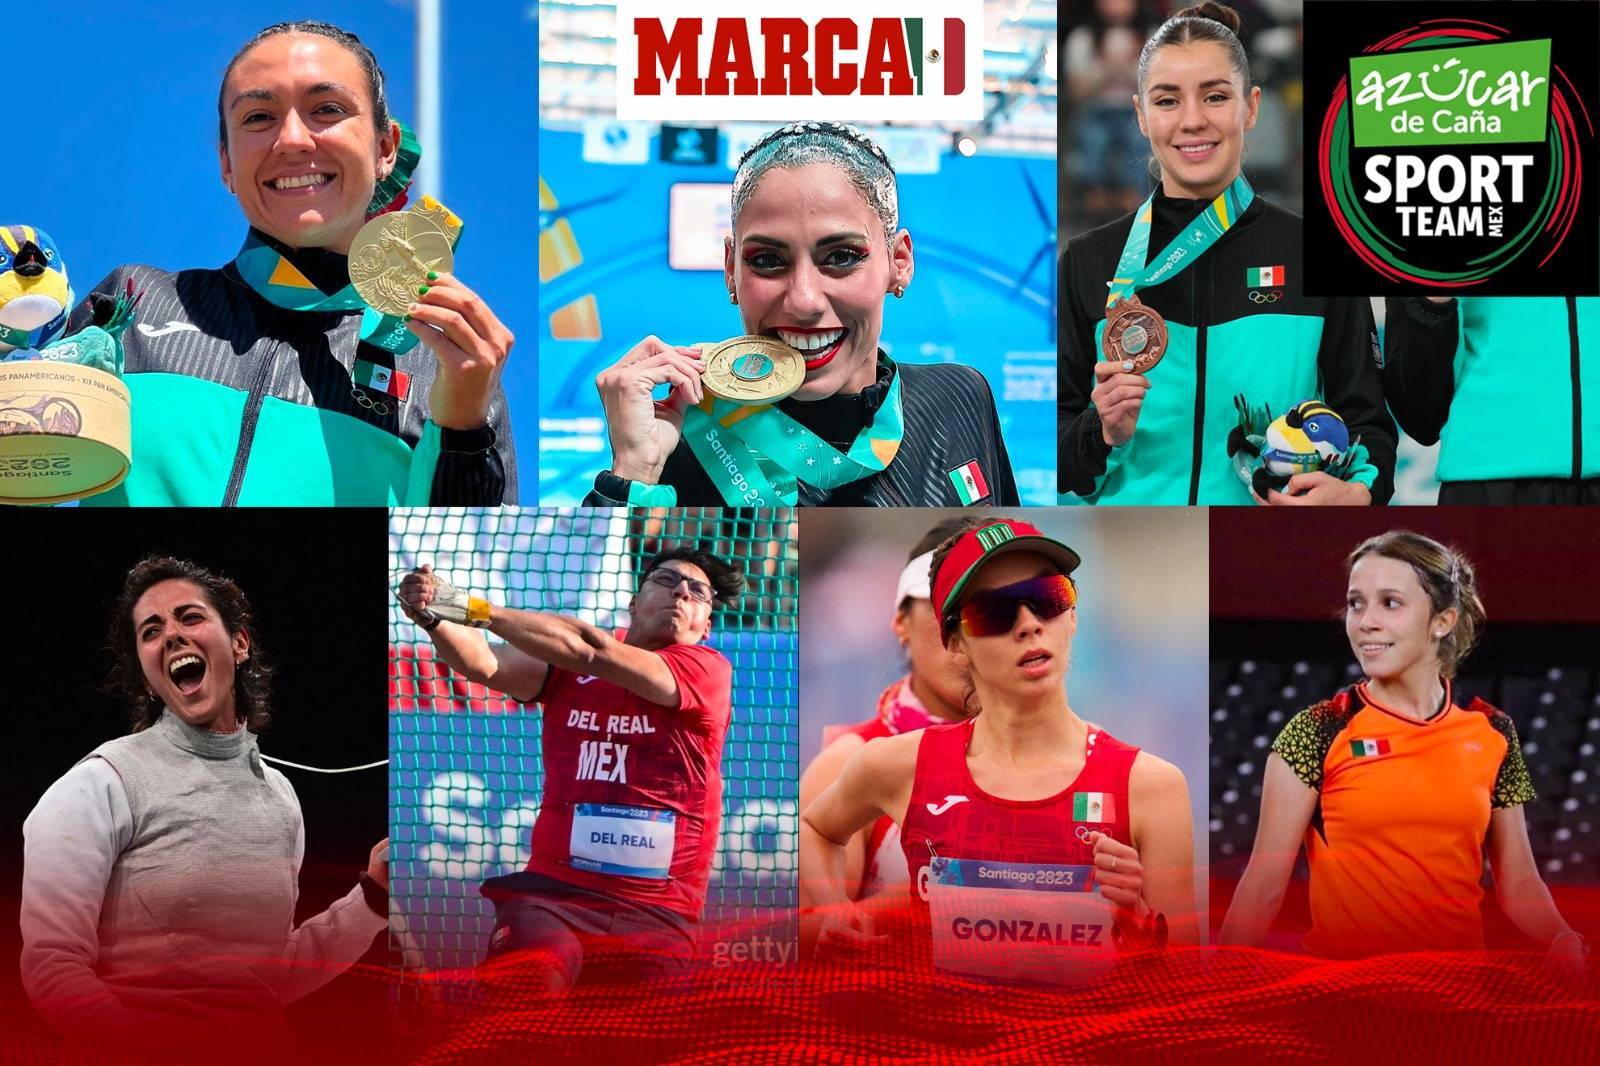 Un dulce camino a París 2024; los atletas de Azúcar de Caña con medallas y pases olímpicos en Santiago 2023